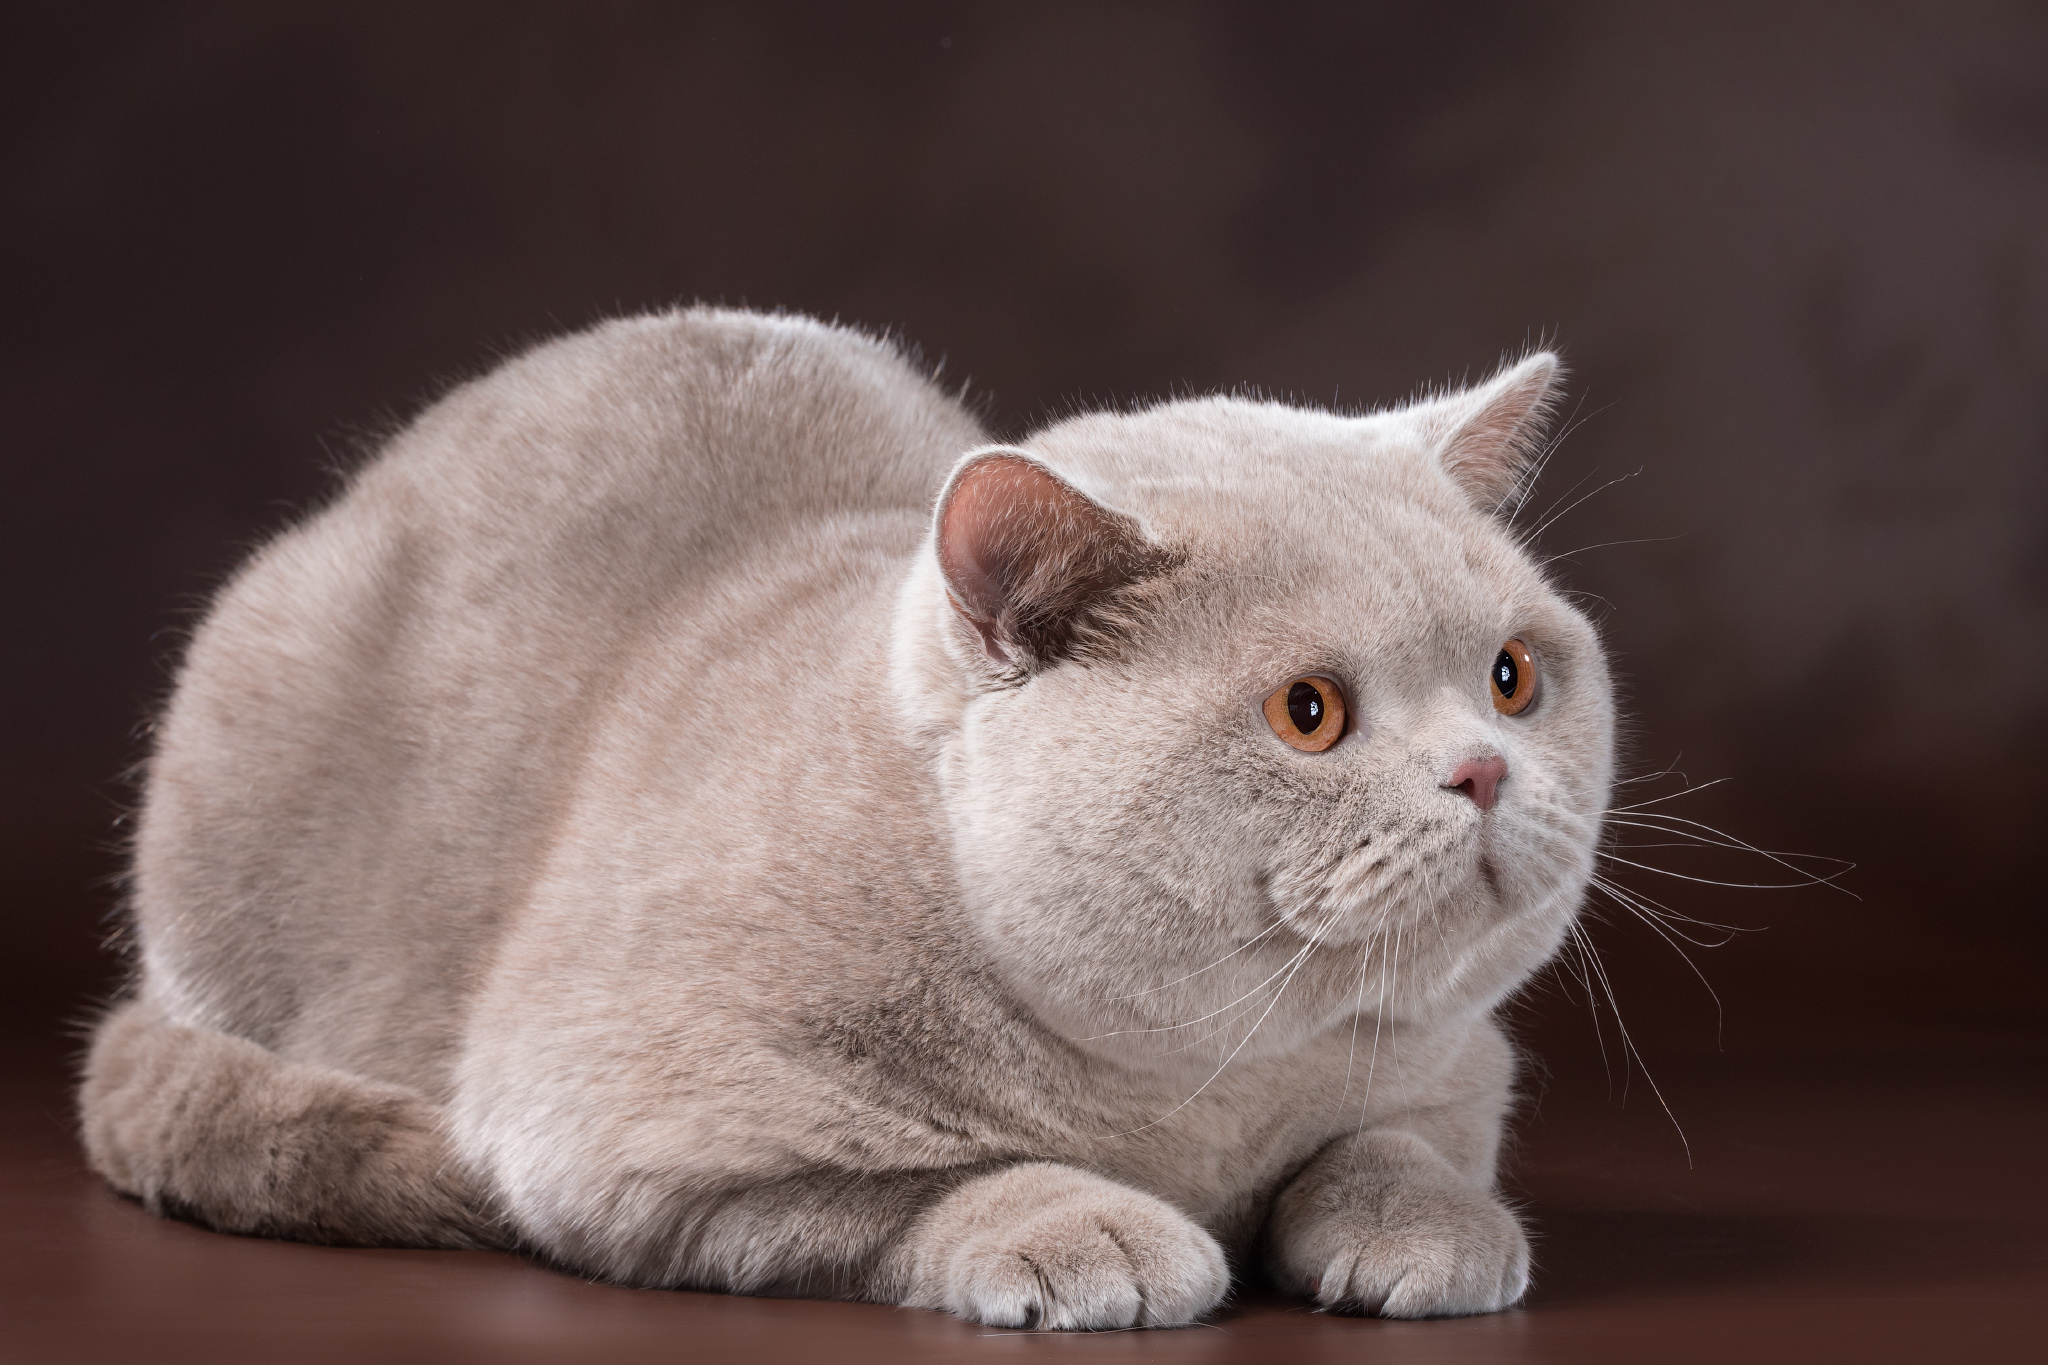 Фотографии породы британских кошек. Британская короткошёрстная кошка. Британская короткошёрстная кошка лиловая. Окрас фавн британских кошек. Лиловый кот британец.